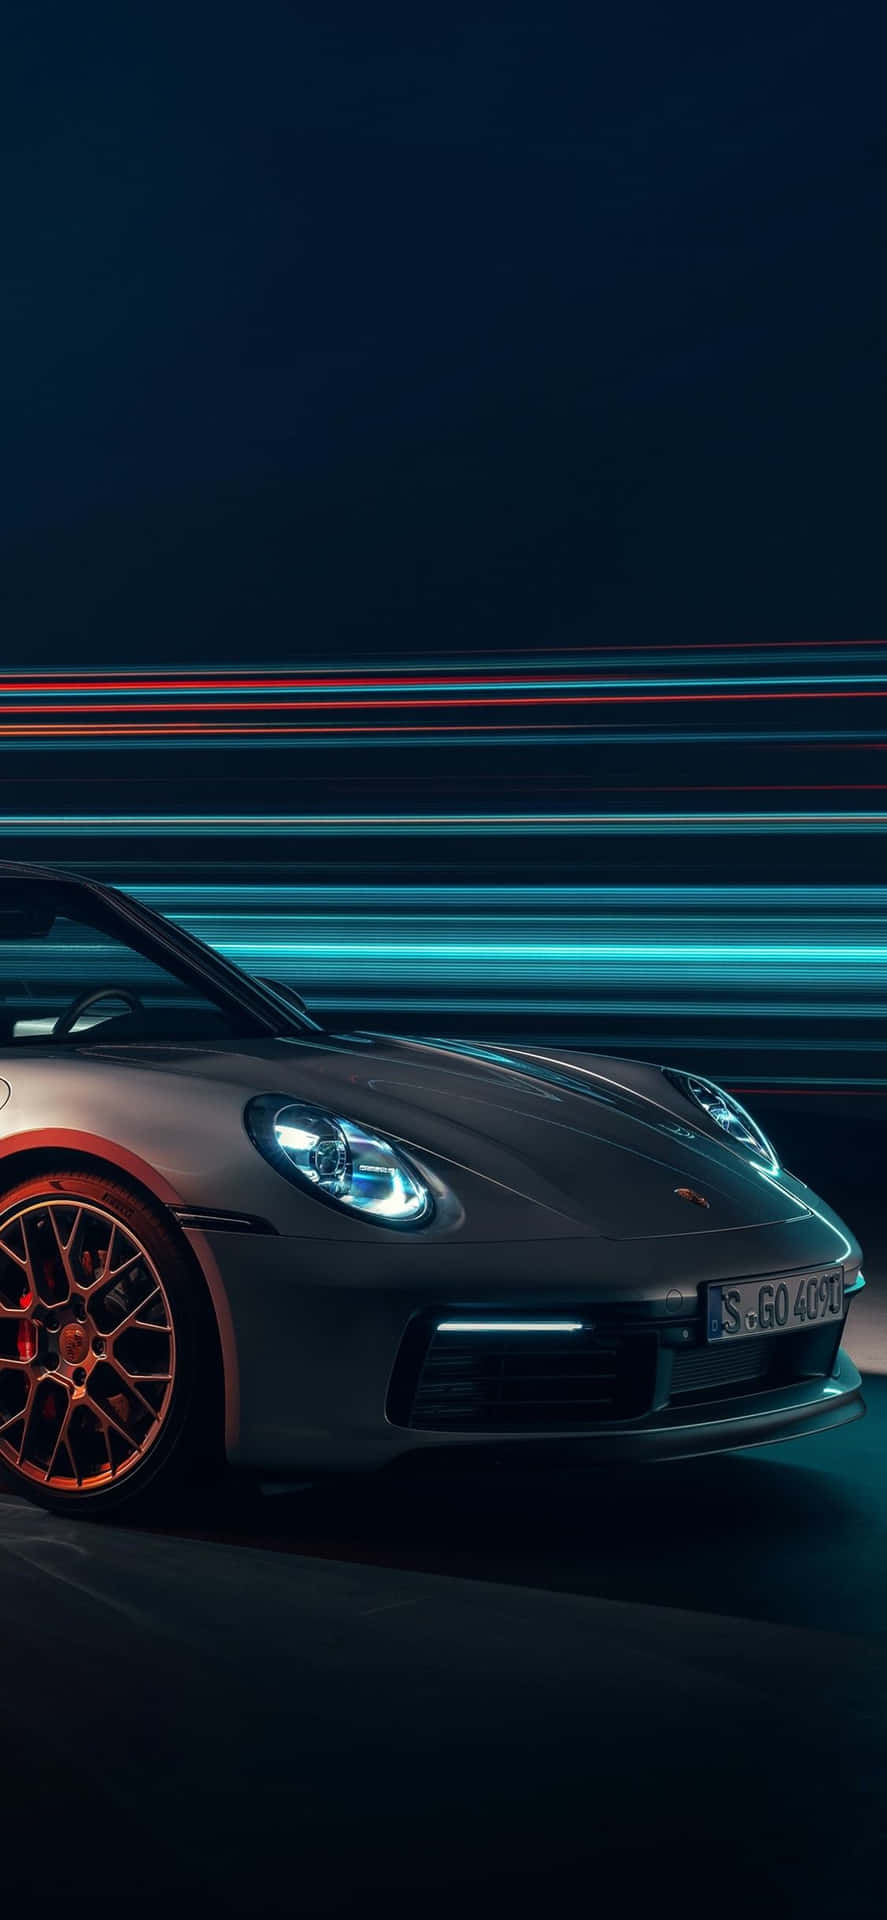 Hình nền điện thoại Porsche 911 GT3 2022: Bạn yêu thích và đam mê với những chiếc xe hơi đỉnh cao? Với bộ sưu tập hình nền điện thoại Porsche 911 GT3 2022 của chúng tôi sẽ làm bạn ngất ngây trước những thiết kế đẹp mắt của chiếc siêu xe này. Điện thoại của bạn sẽ trở nên độc đáo và thú vị hơn bao giờ hết.